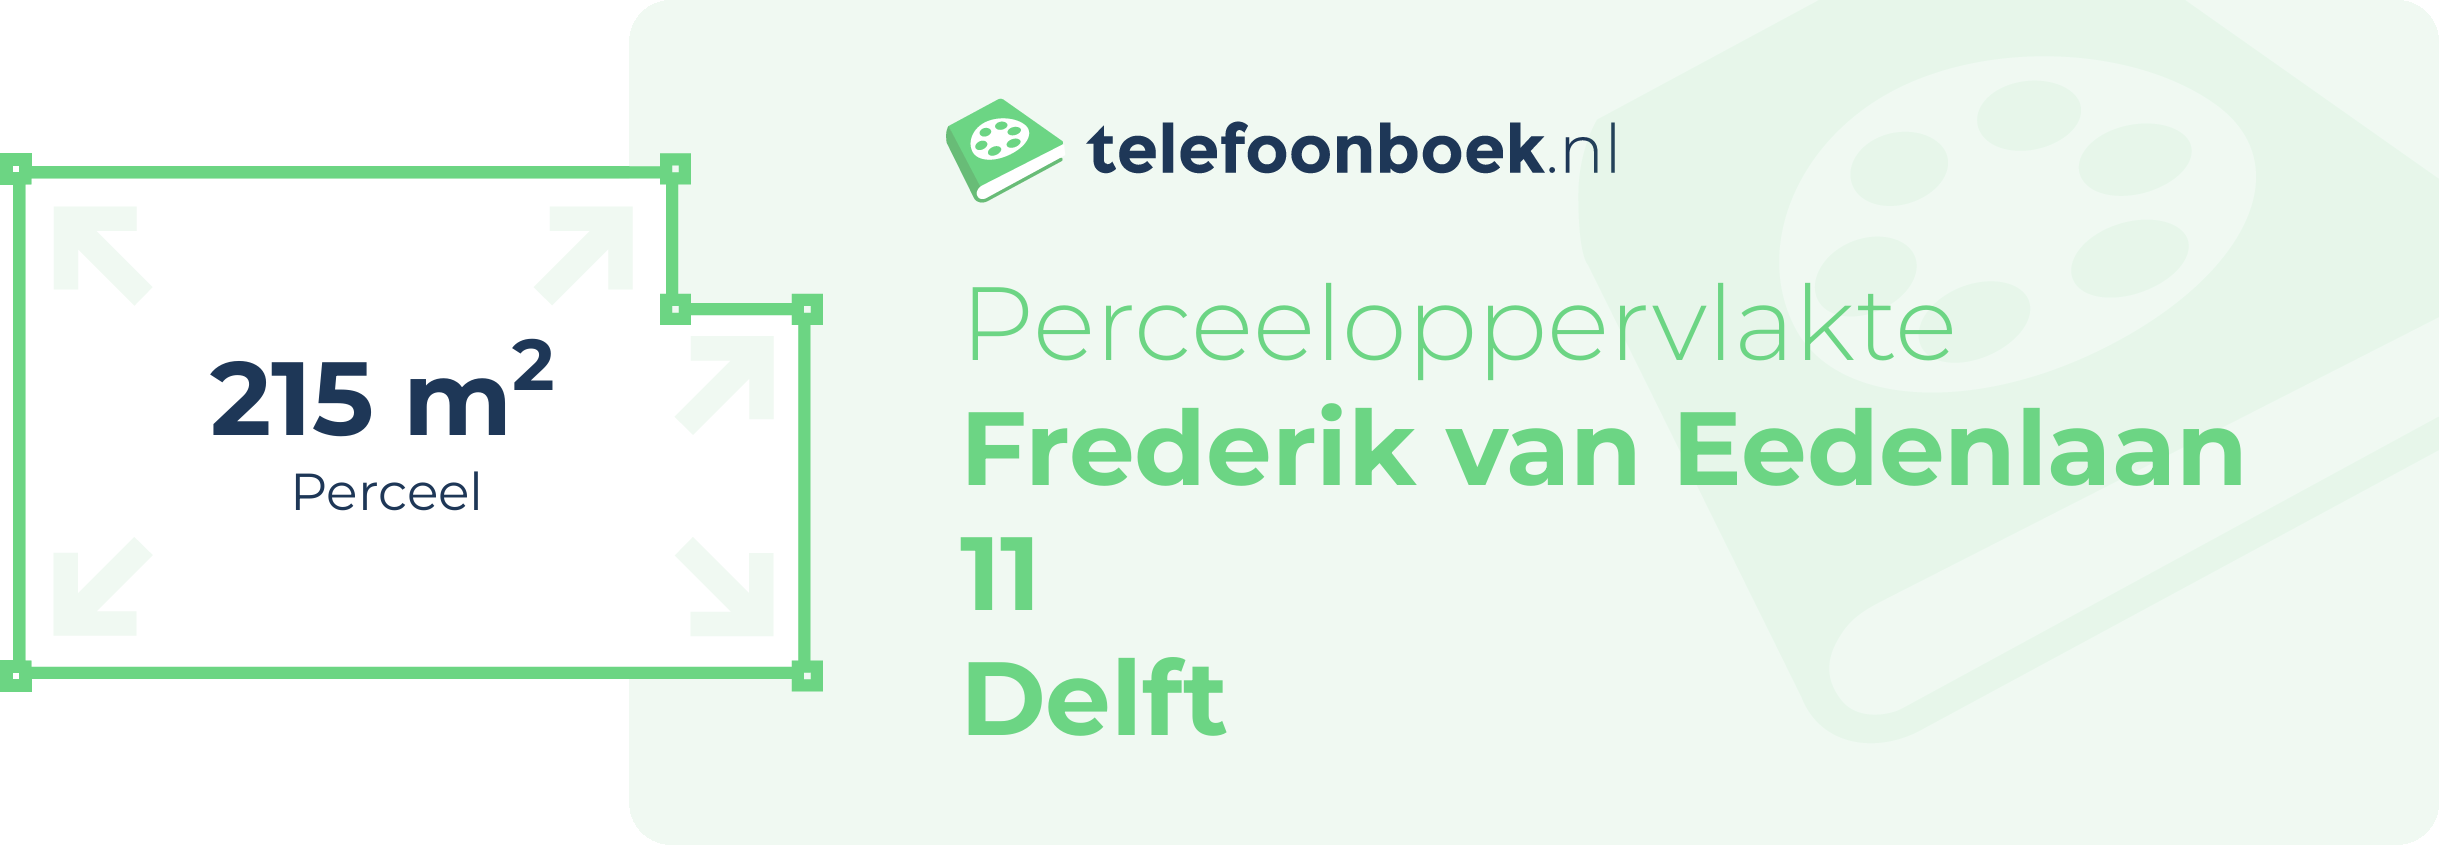 Perceeloppervlakte Frederik Van Eedenlaan 11 Delft